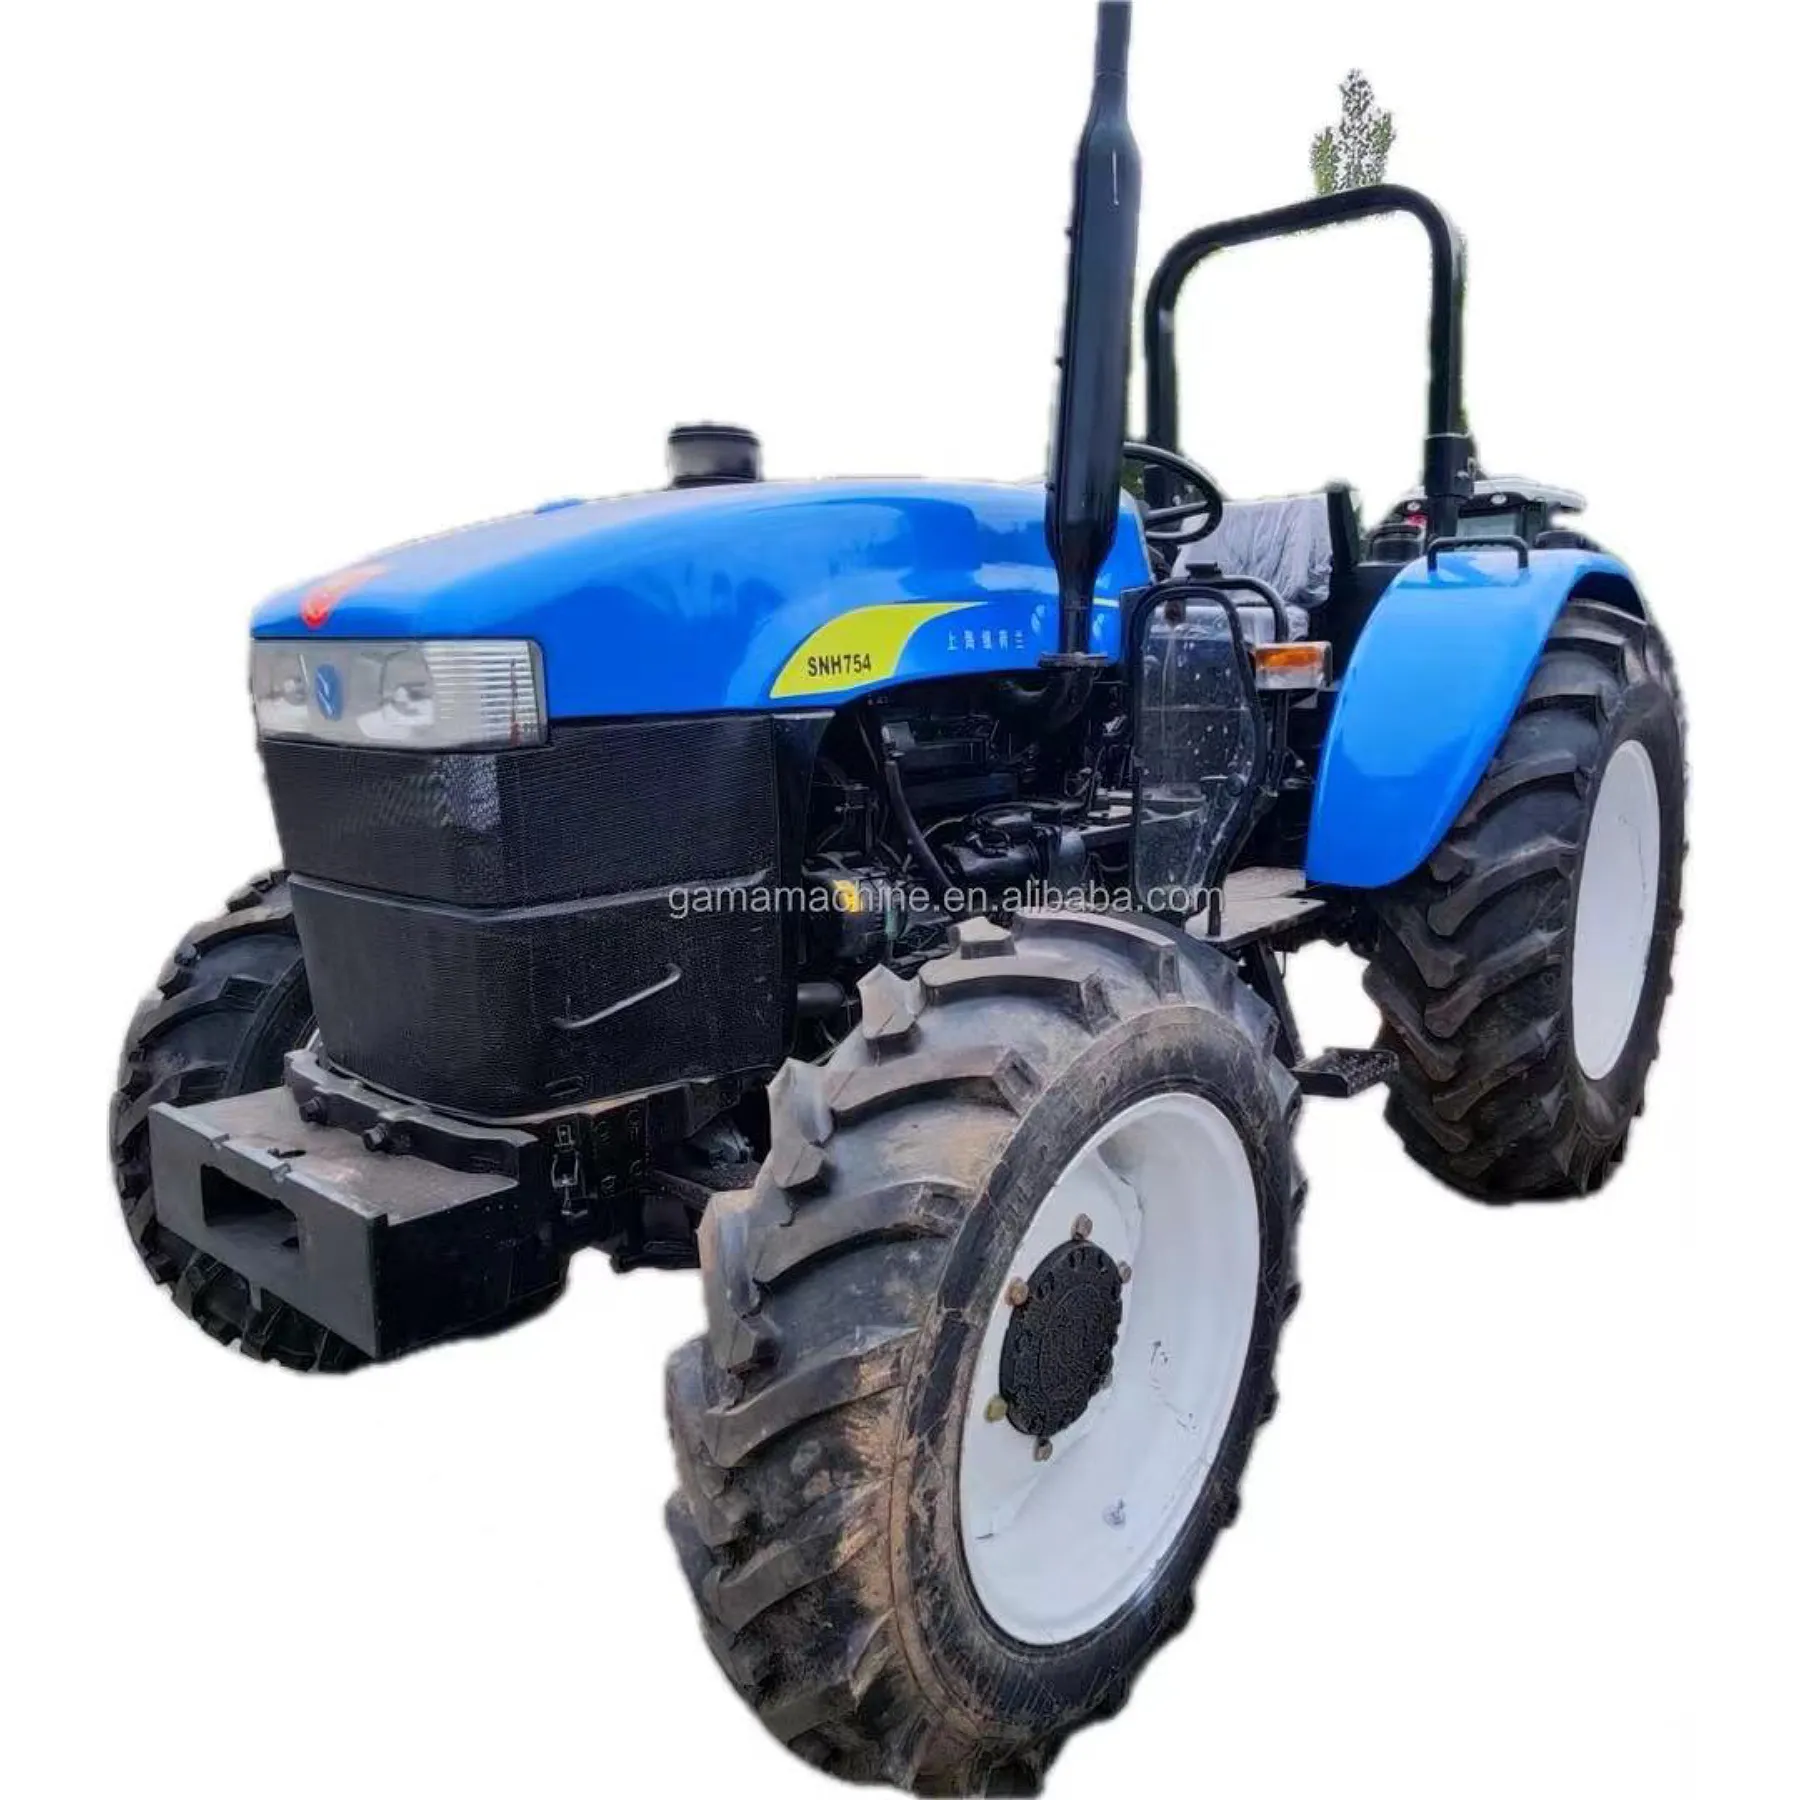 Traktor berita dan holland dengan traktor muatan depan mesin bekas pertanian deutz SNH754 75hp traktor